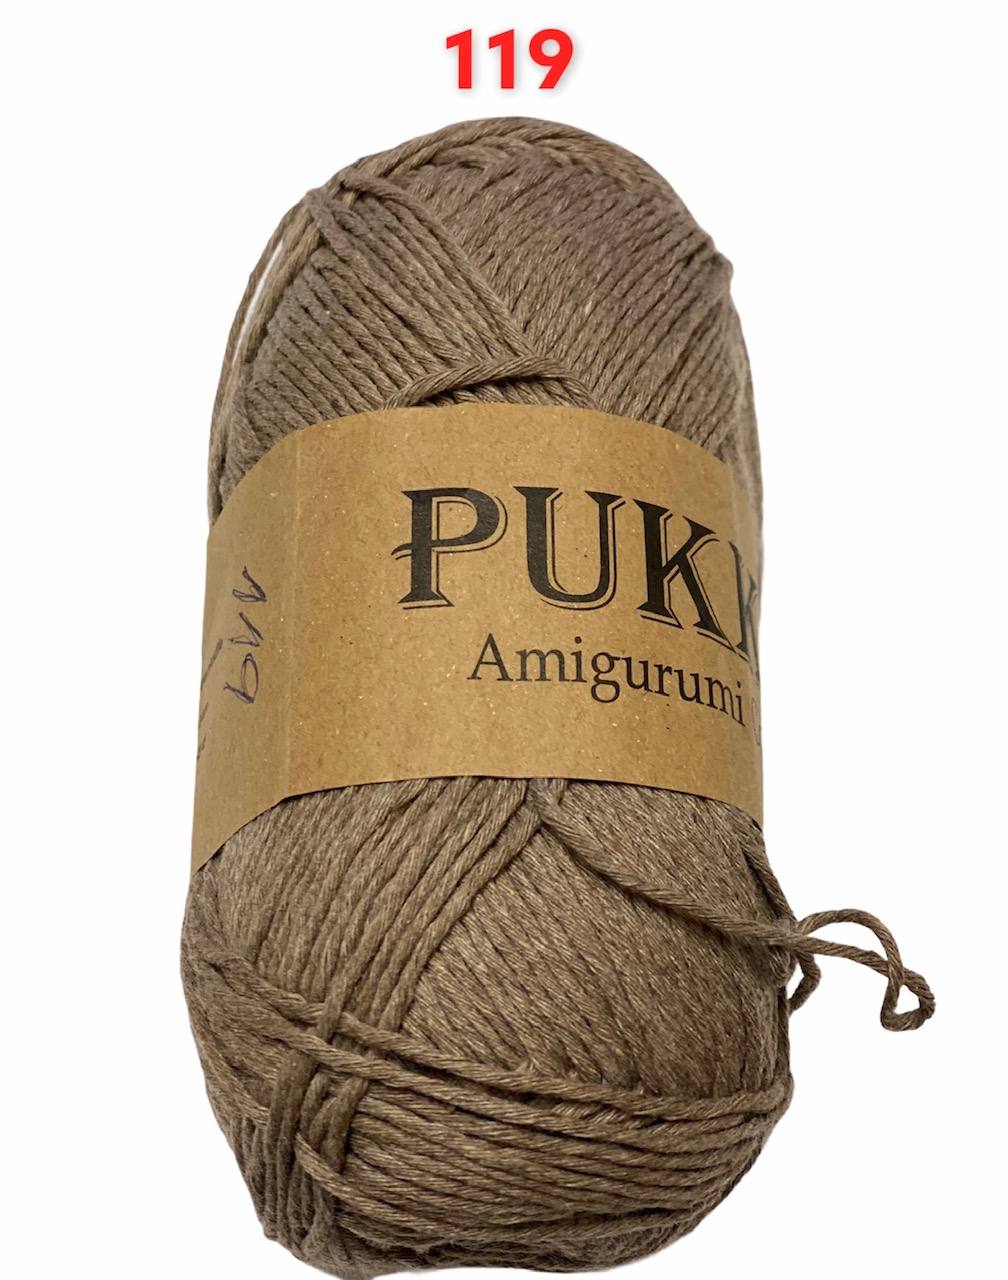 PUKKA Amigurumi Cotton 100g,119